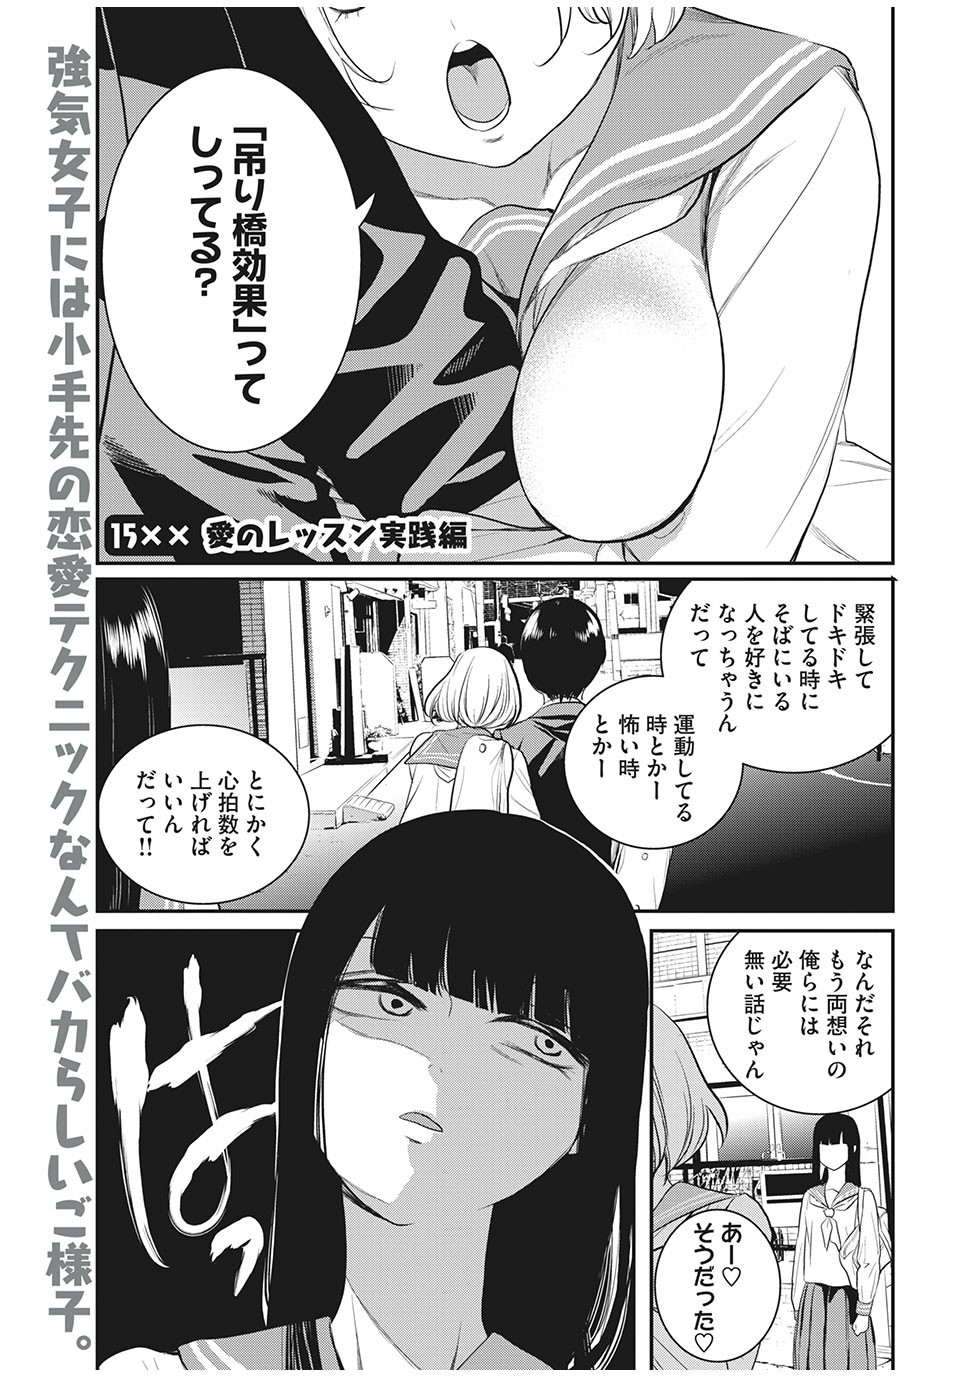 Eigo ×× Sensei - Chapter 15 - Page 1